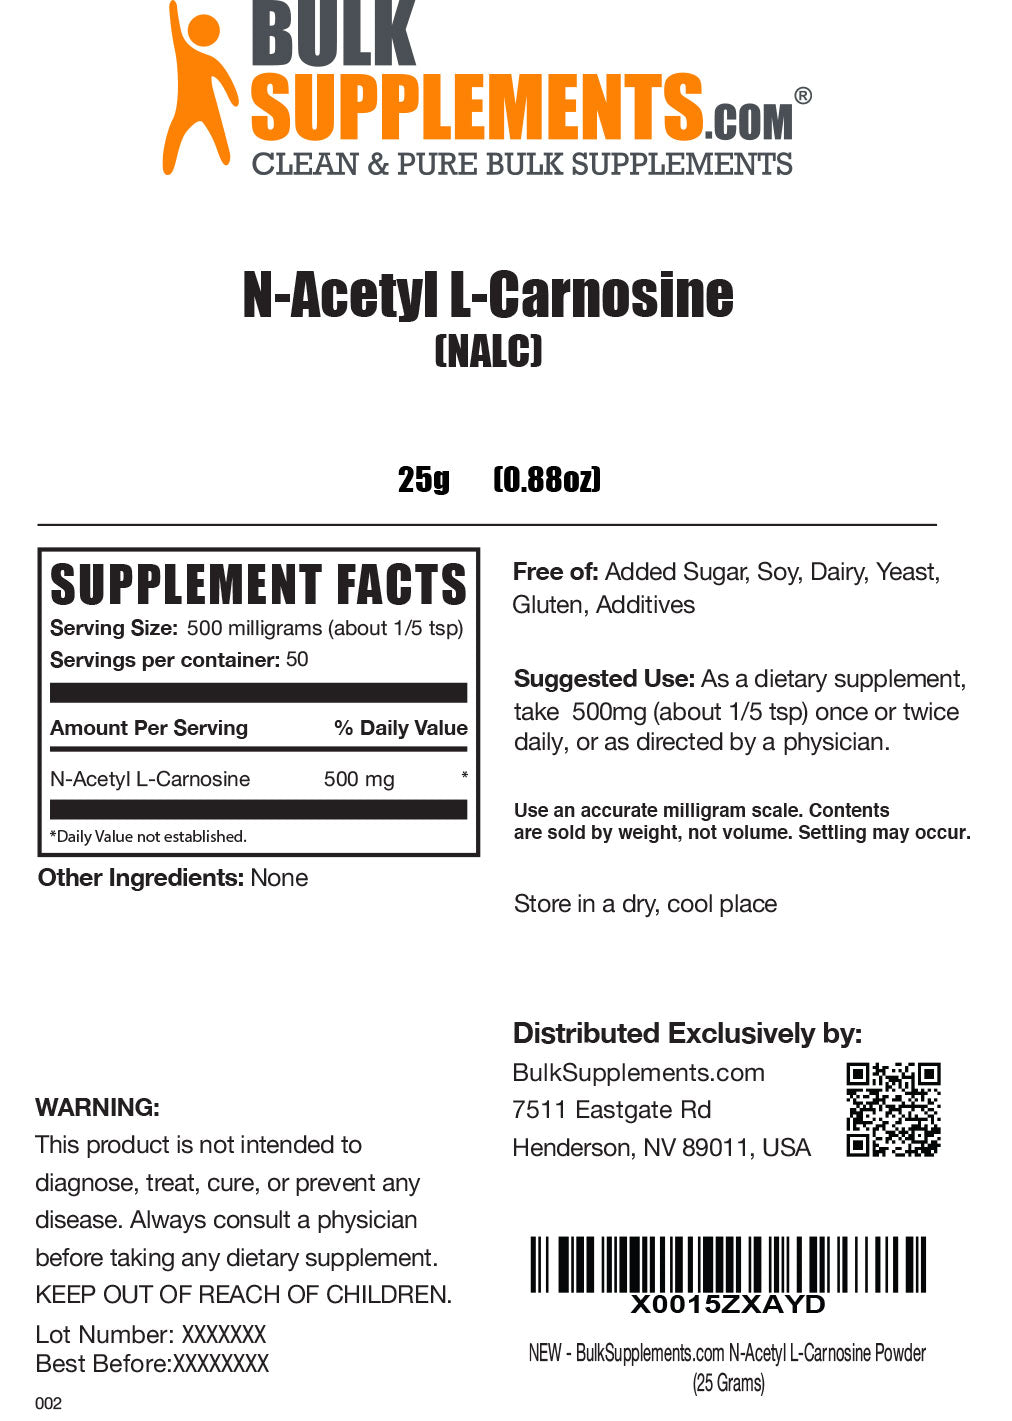 N-Acetyl L-Carnosine (NALC) powder label 25g